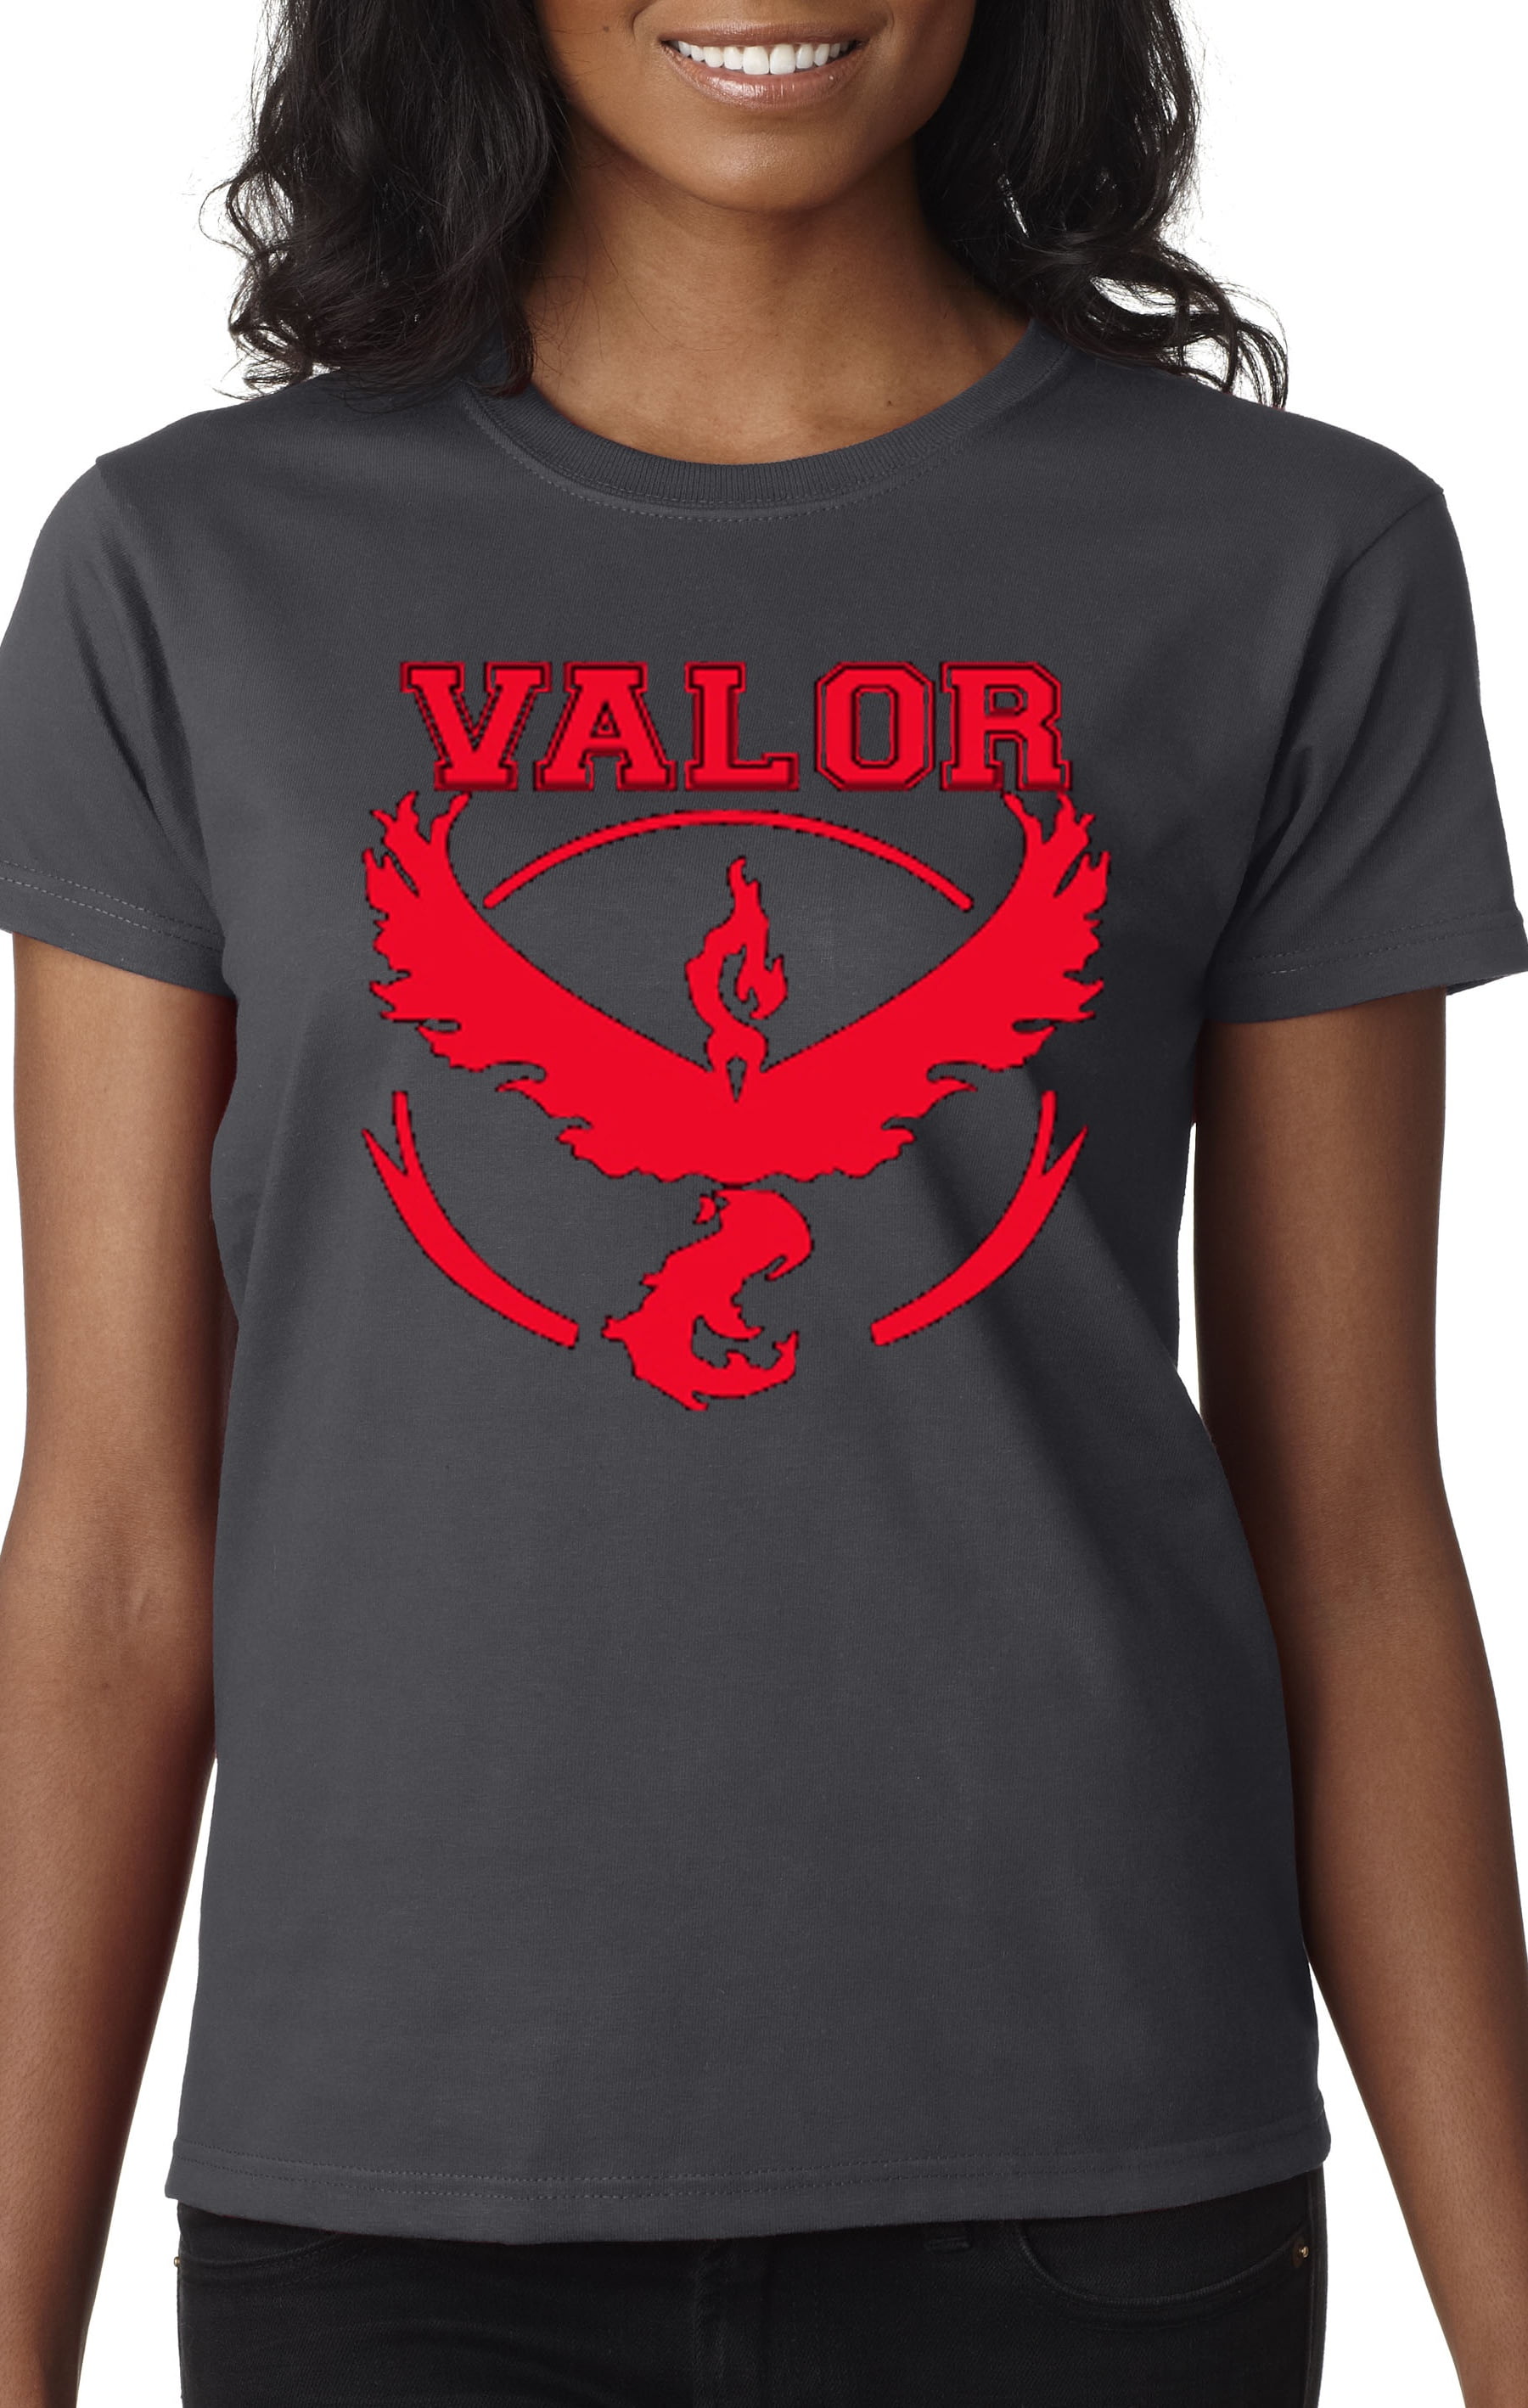 Team Valor Adult to Kids Sizes POKEMON GO T Shirt Inspired Design